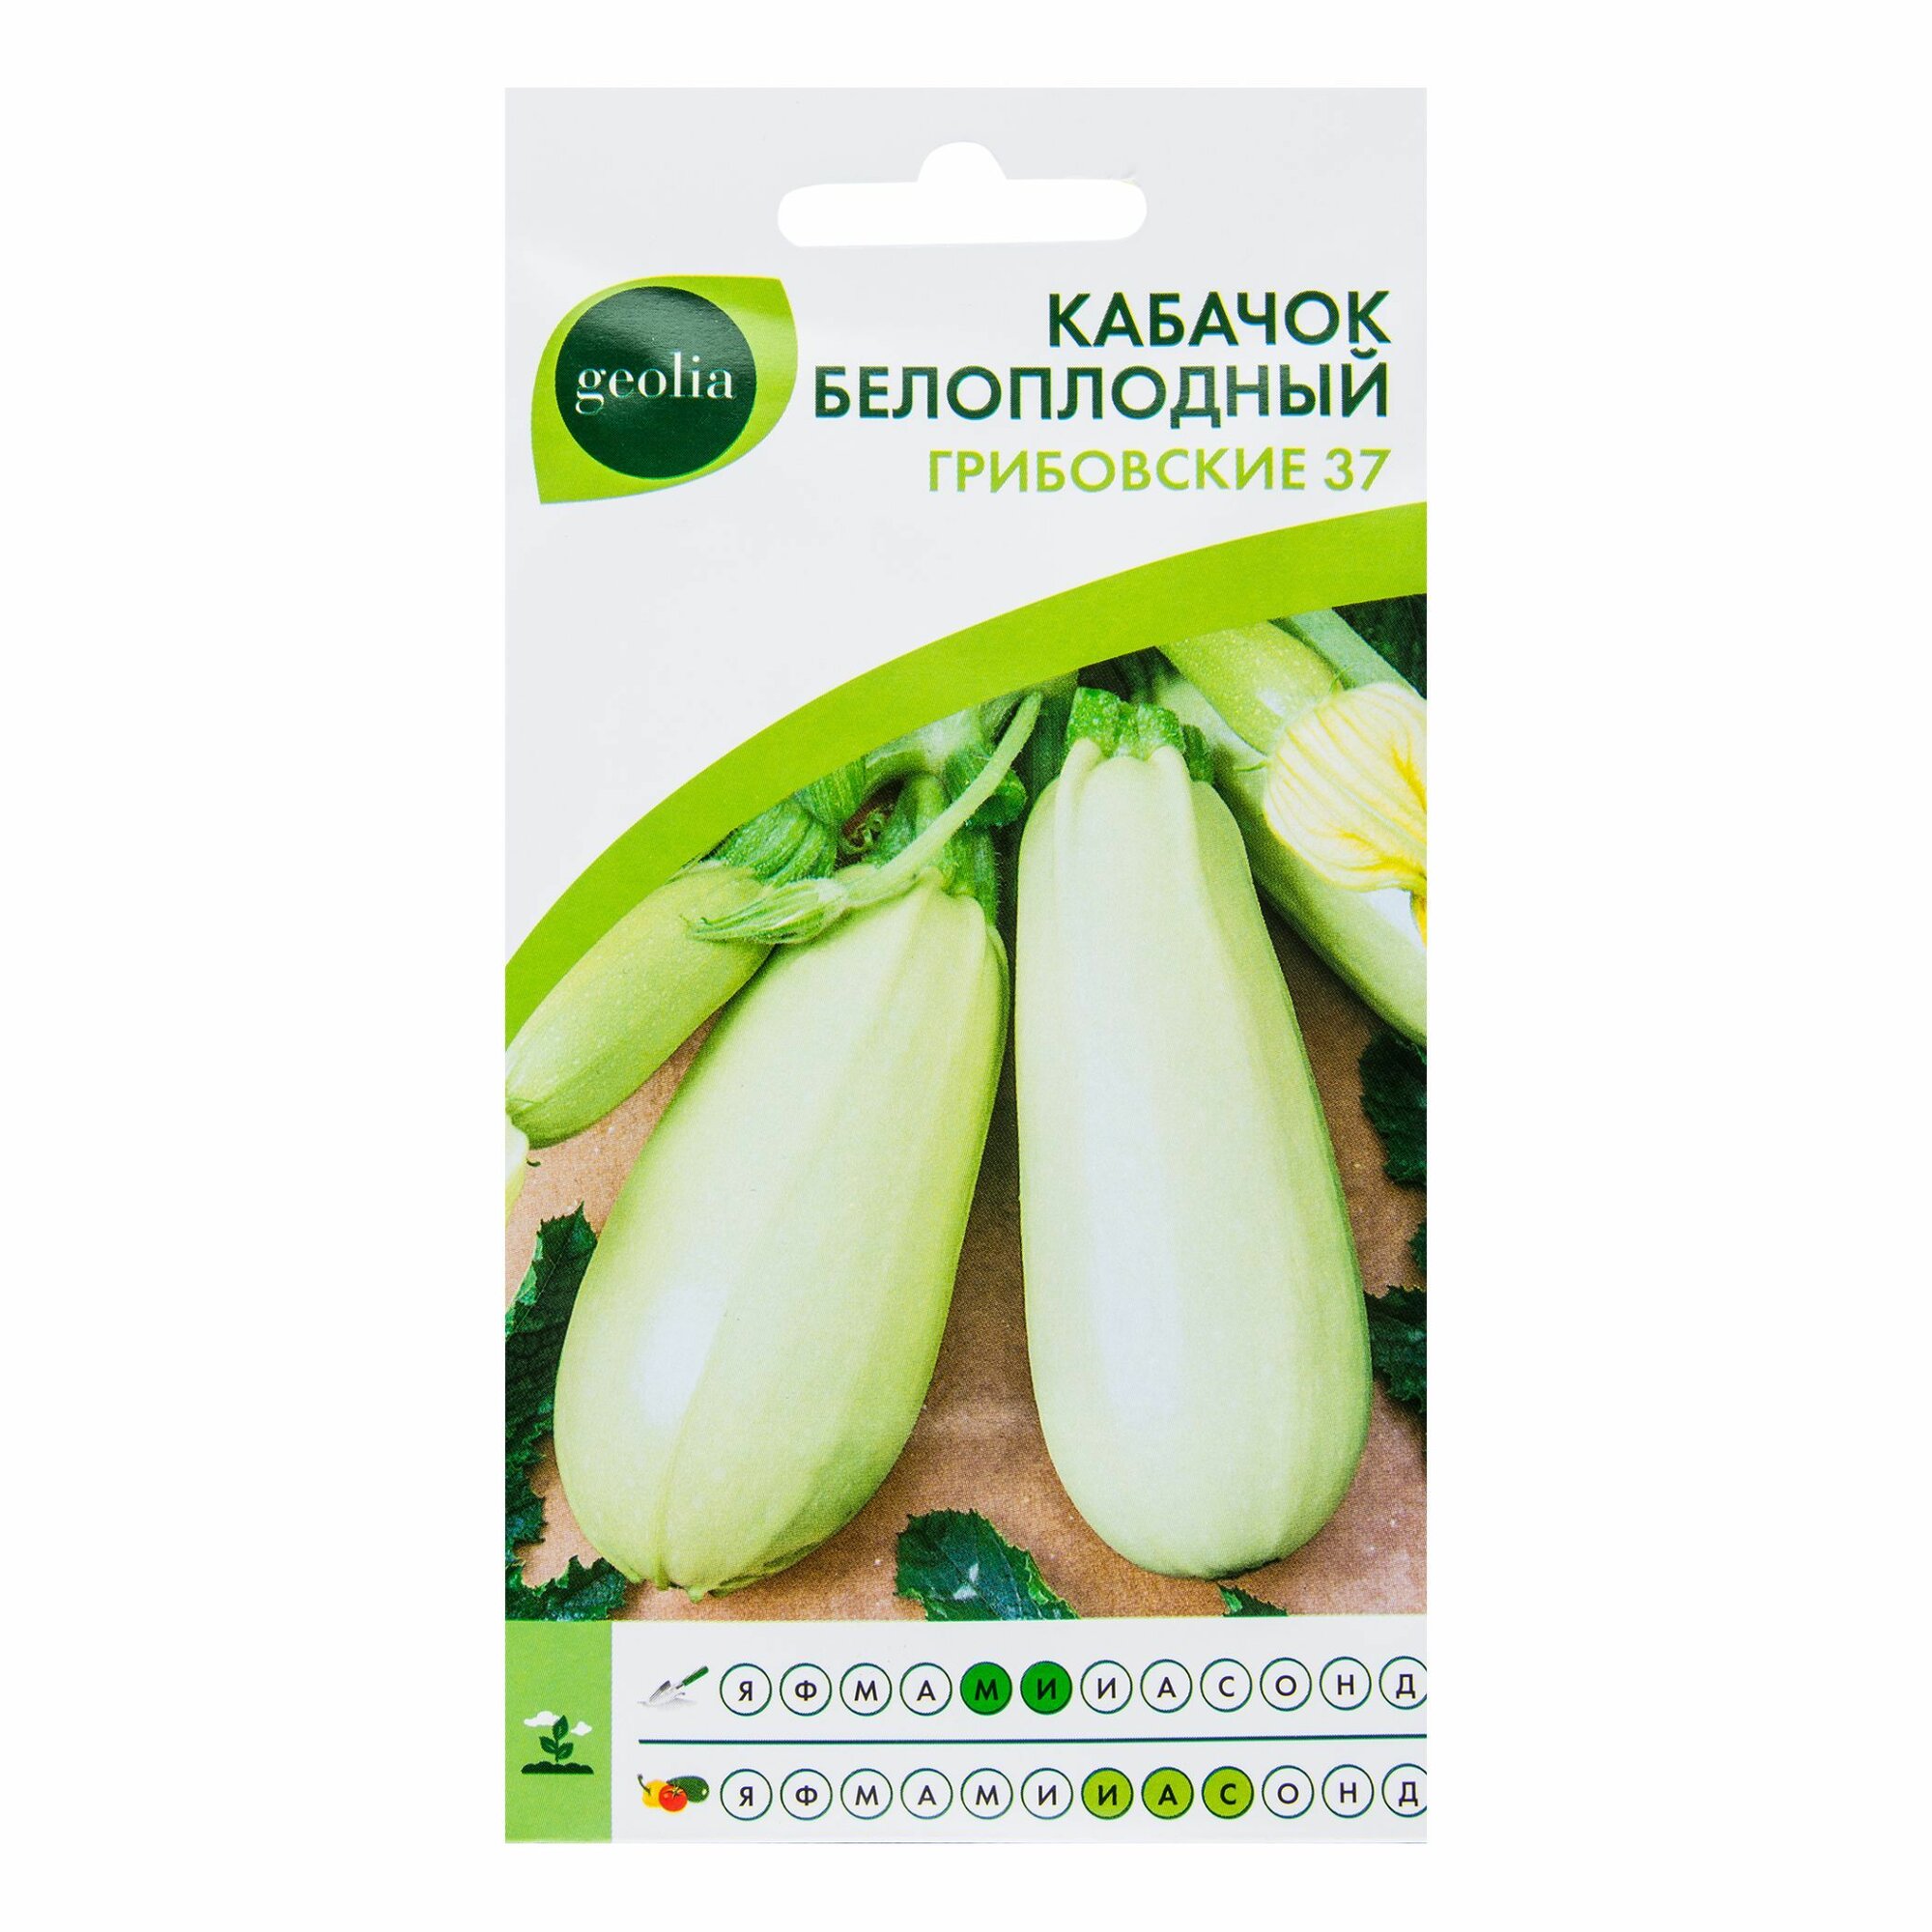 Семена кабачков белоплодный Грибовский 37